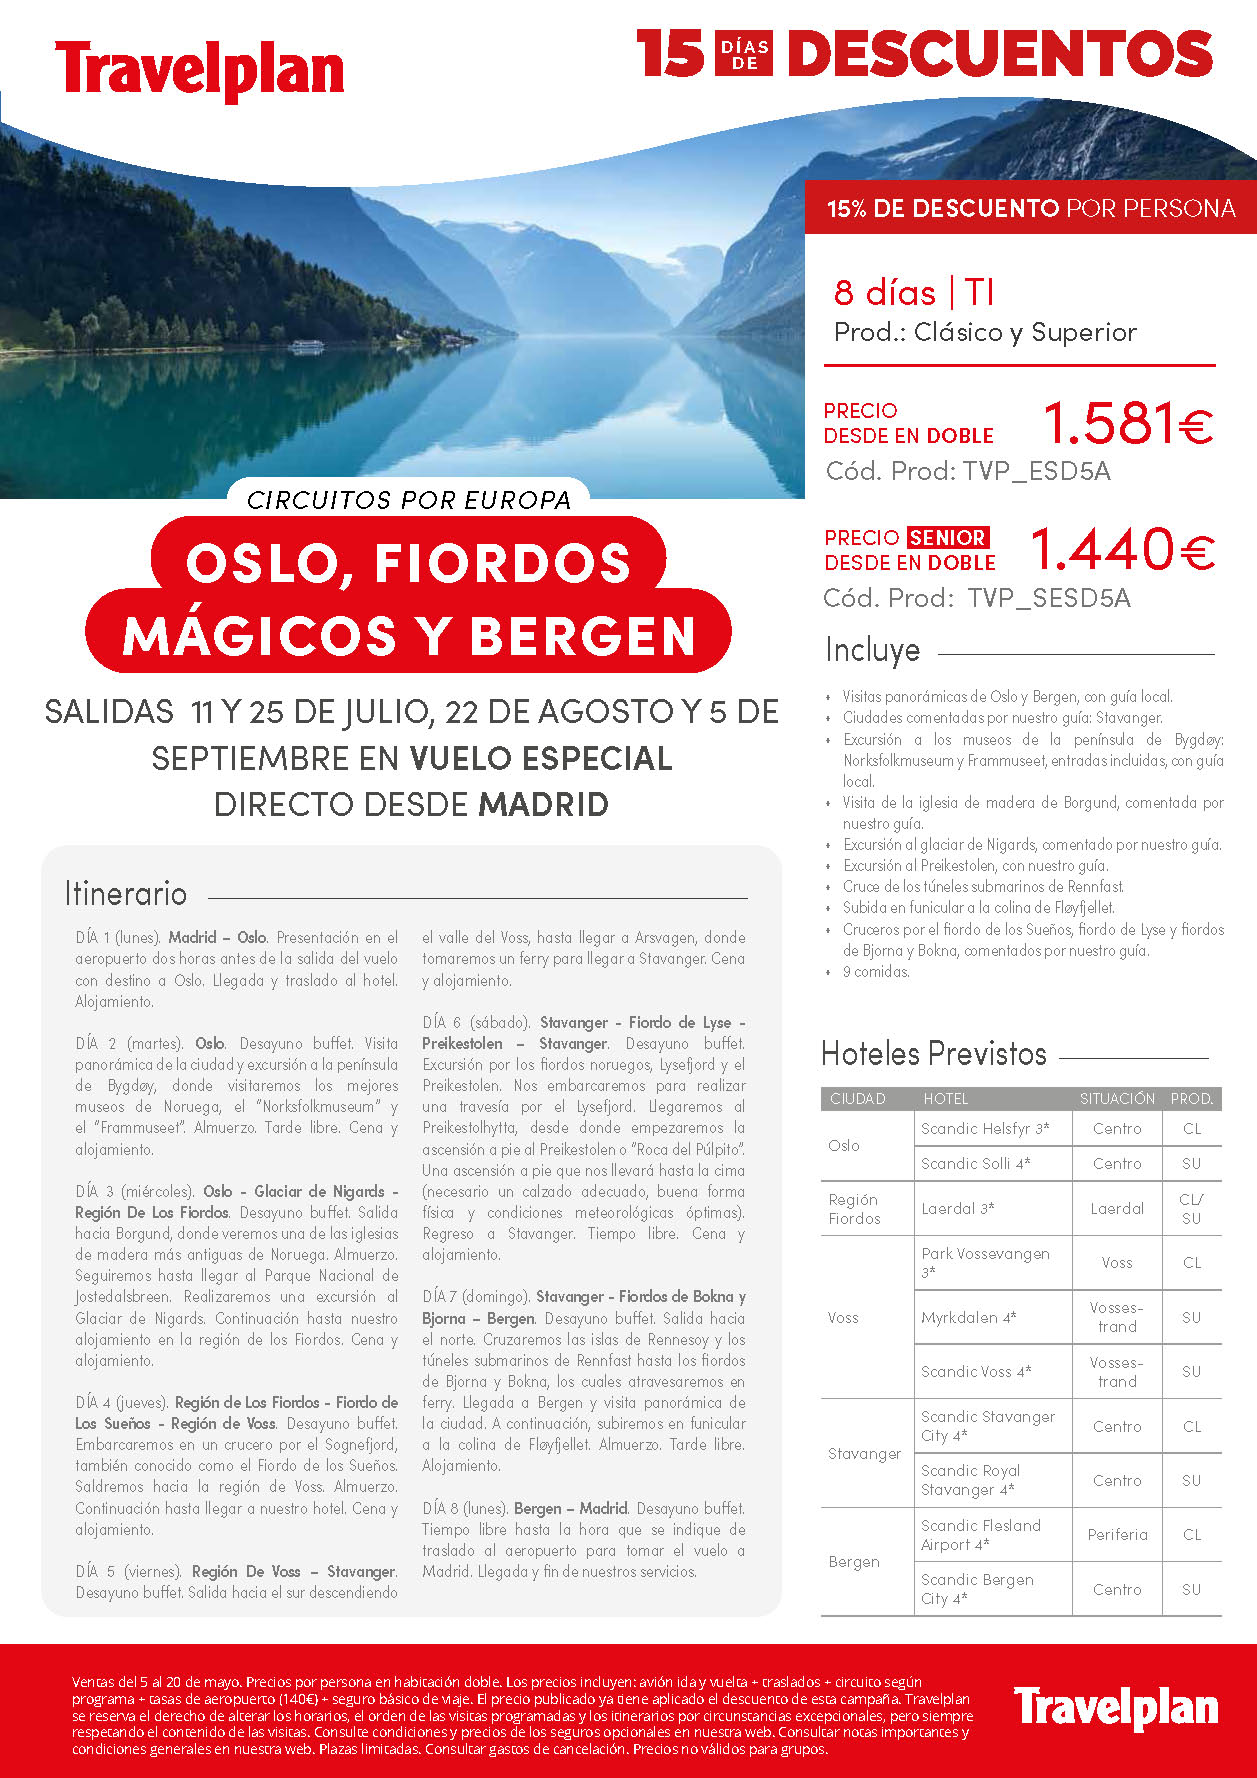 Oferta Travelplan Mayo 2022 Oslo Fiordos Magicos y Bergen Todo Incluido Senior 8 dias vuelo especial directo desde Madrid salidas Julio Agosto y Septiembre de 2022